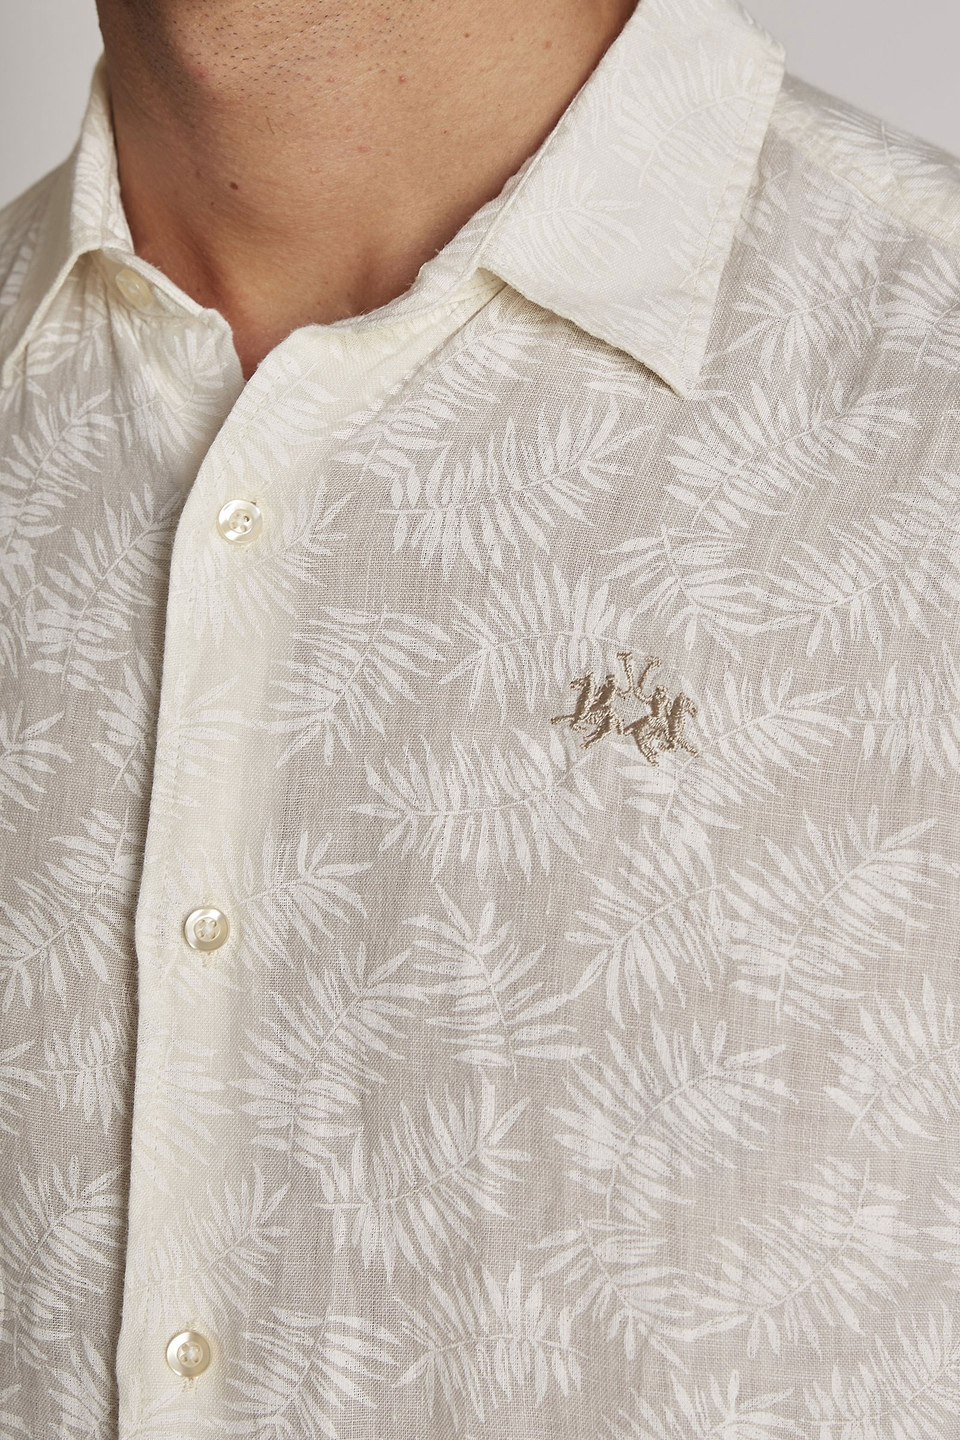 Camisa de hombre de lino, manga larga, corte regular - La Martina - Official Online Shop